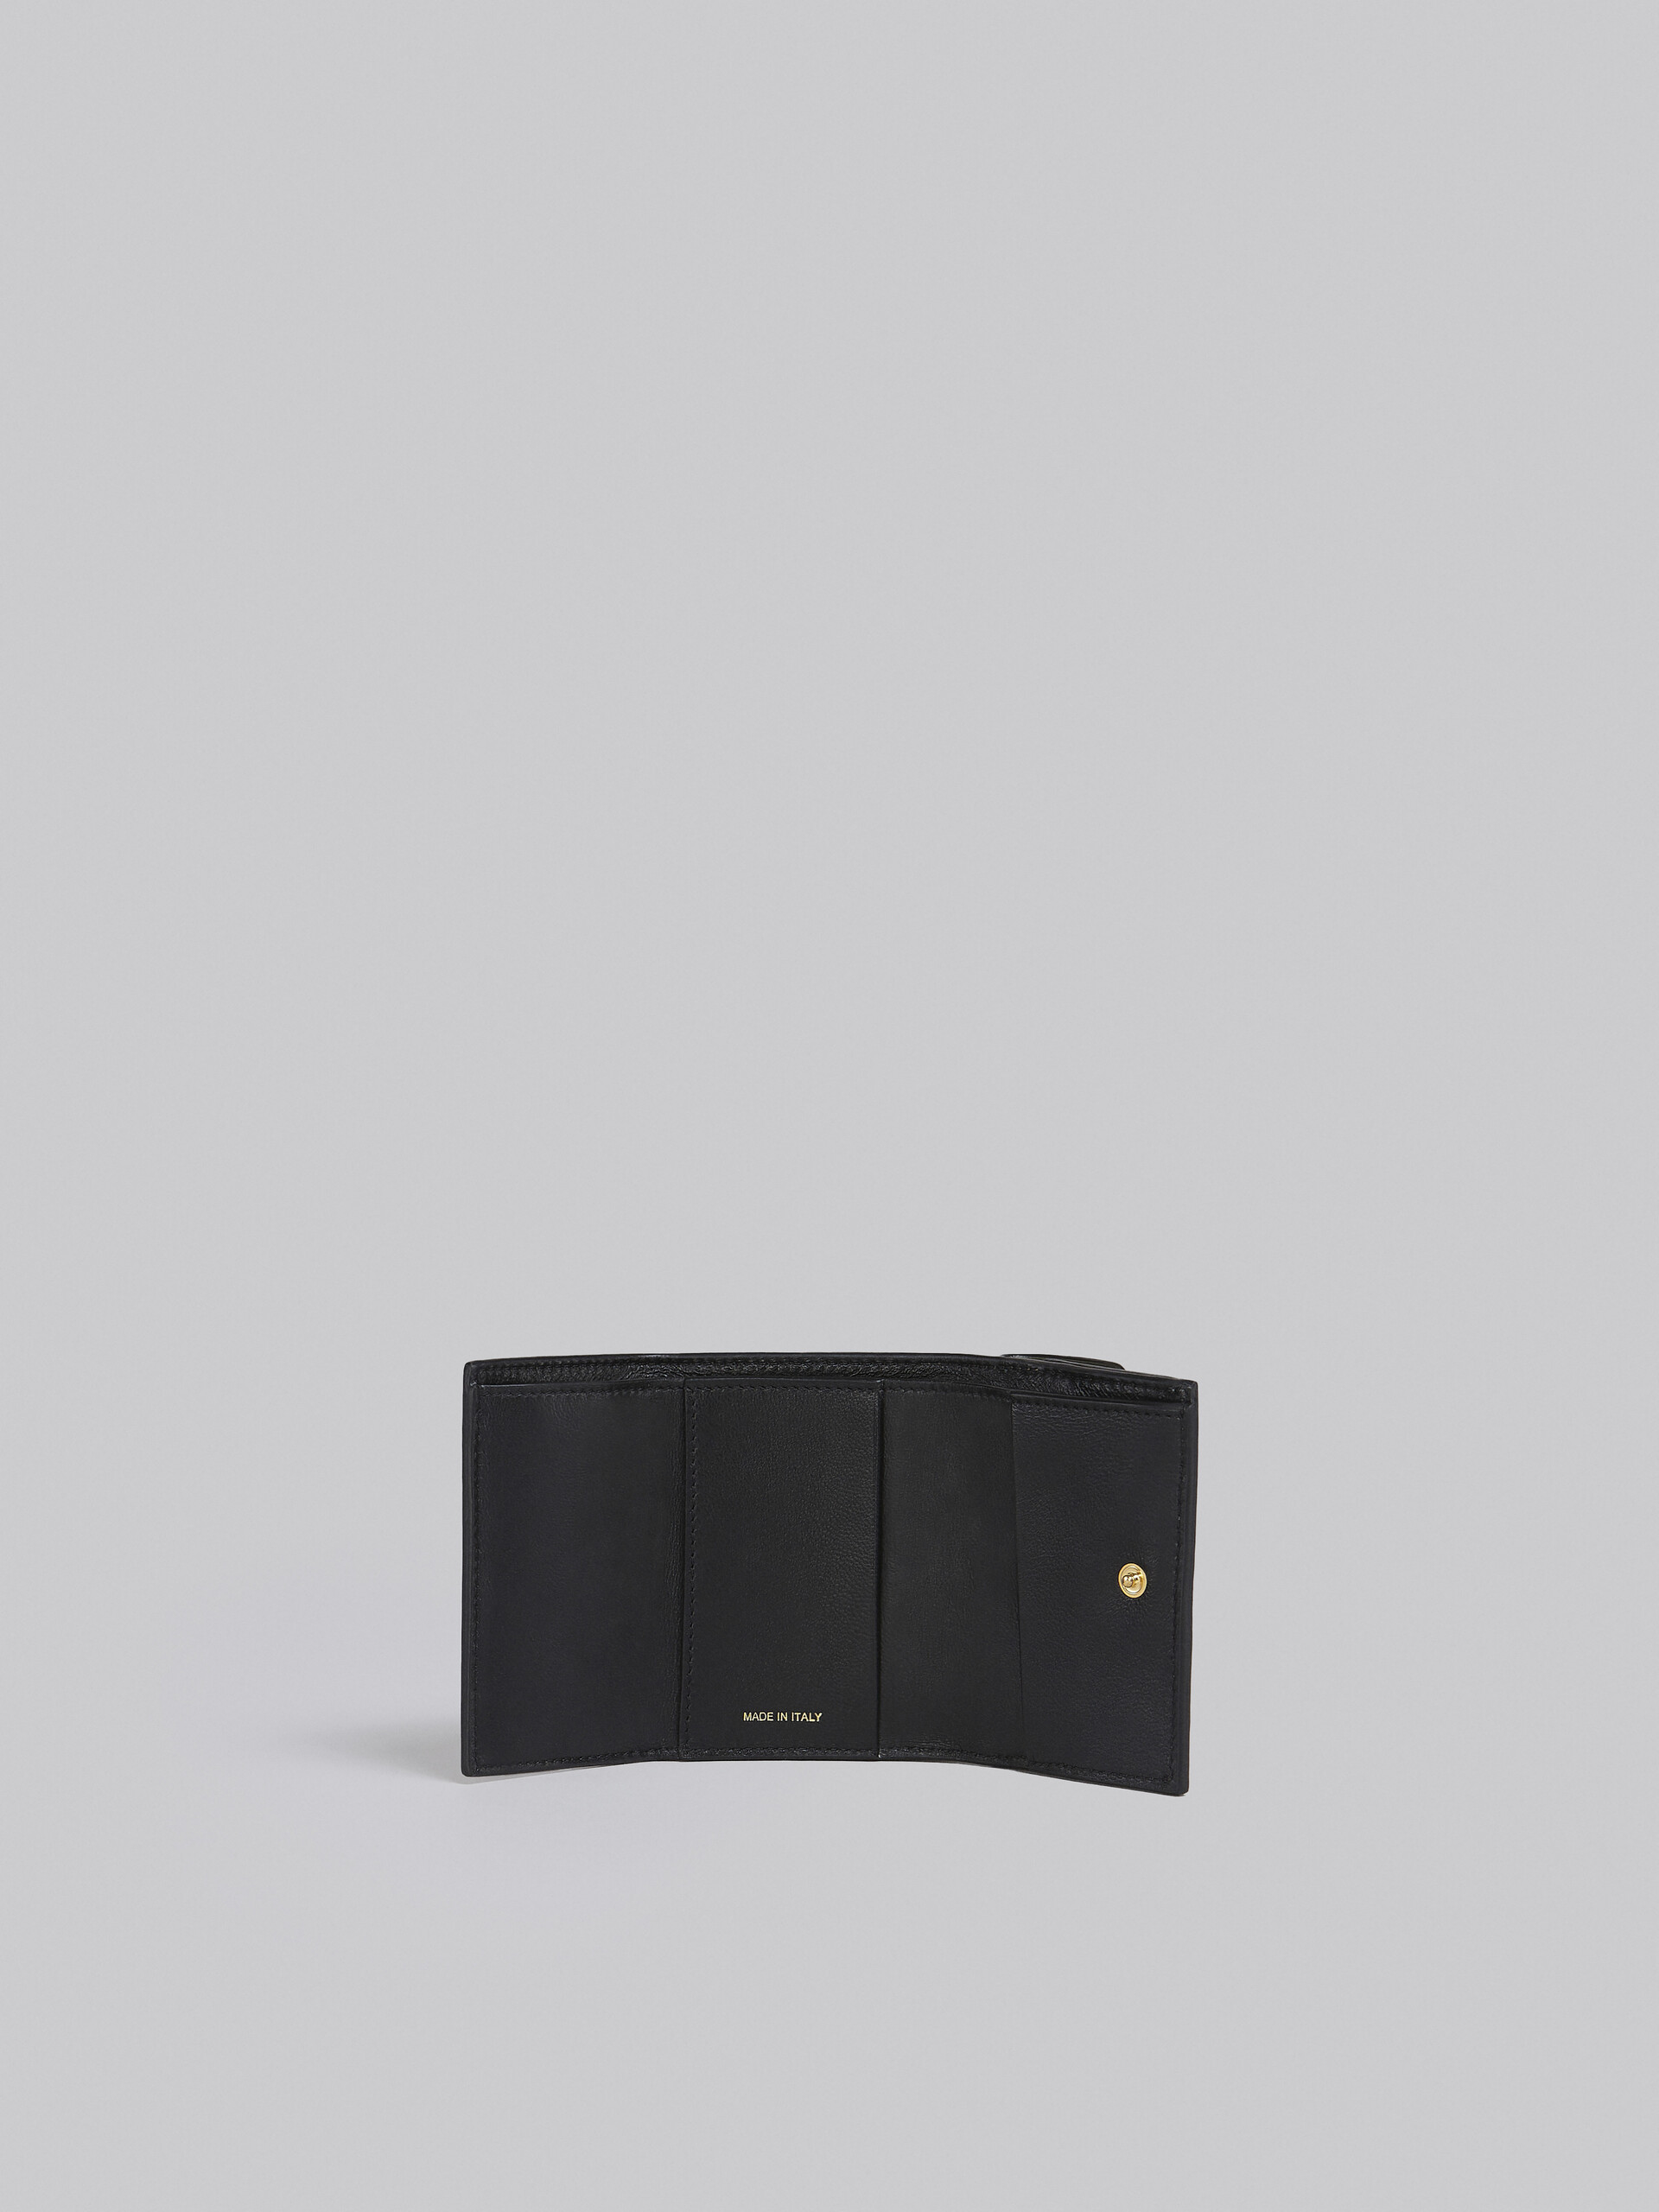 グレー、ホワイト、ブラウン レザー製三つ折りウォレット - 財布 - Image 2